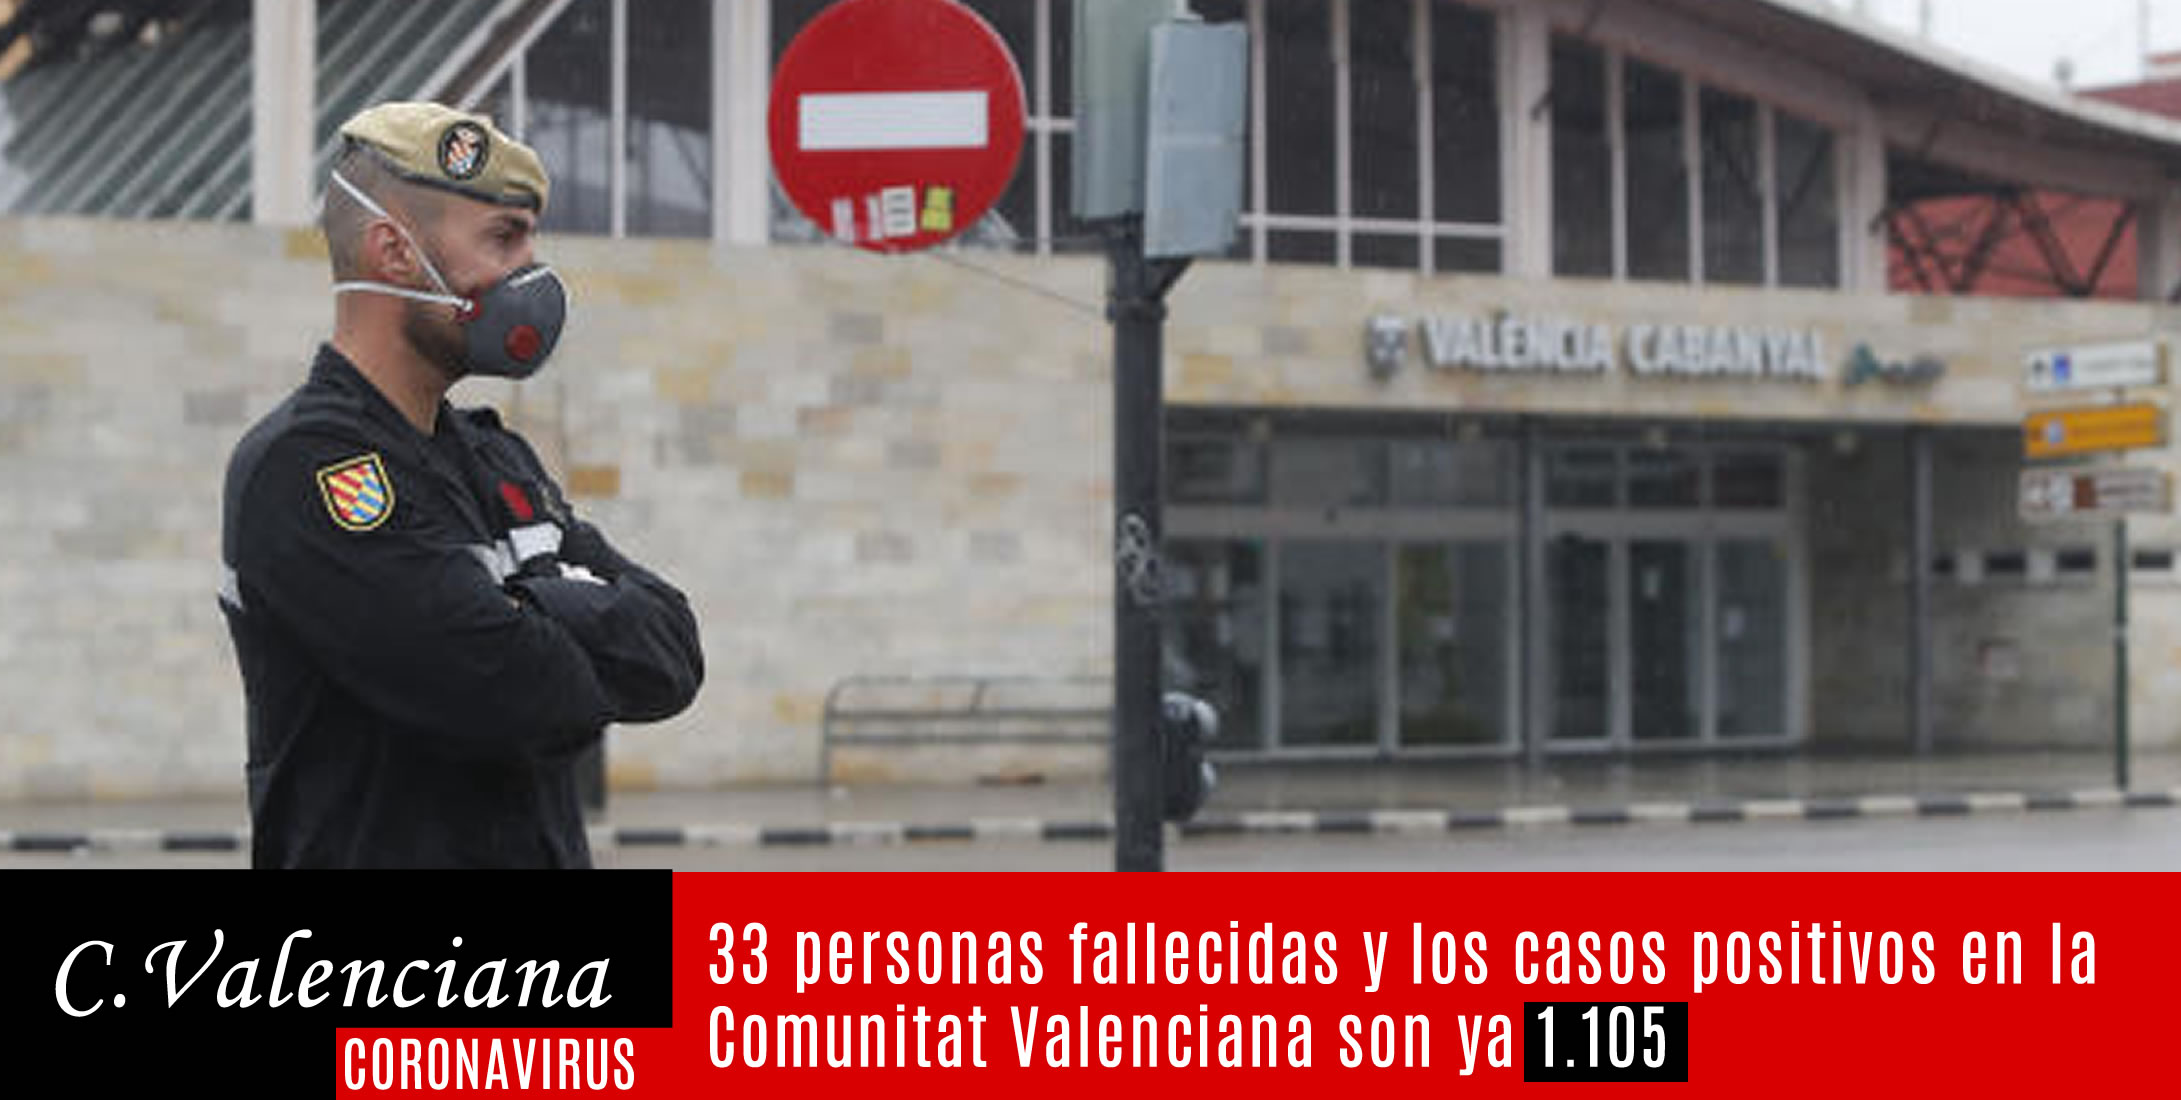 33 personas fallecidas en la comunidad valenciana